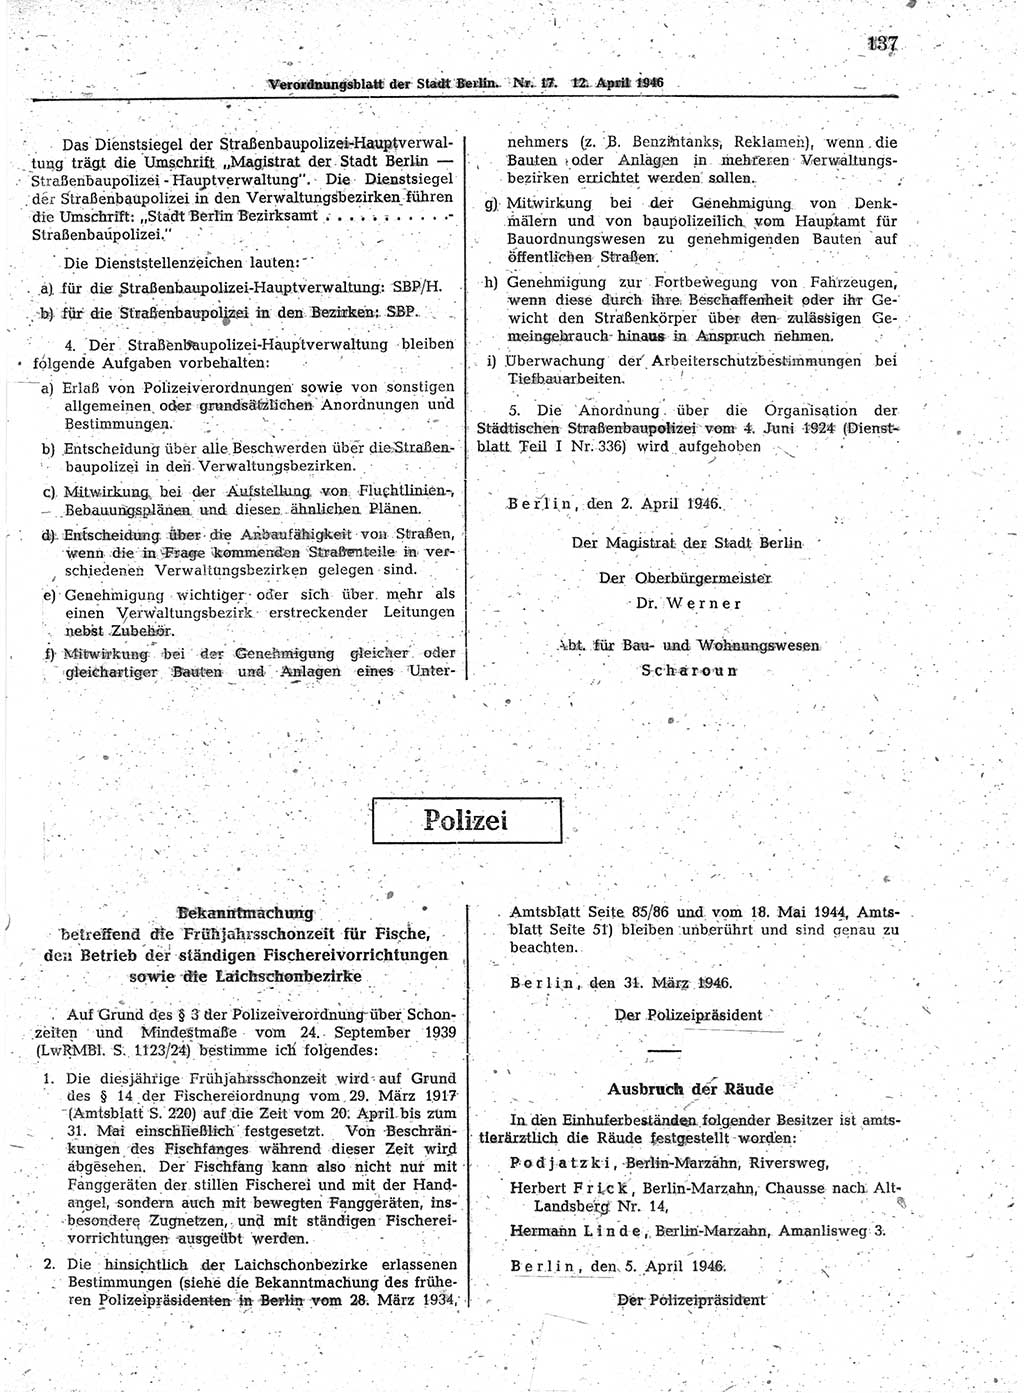 Verordnungsblatt (VOBl.) der Stadt Berlin, für Groß-Berlin 1946, Seite 137 (VOBl. Bln. 1946, S. 137)